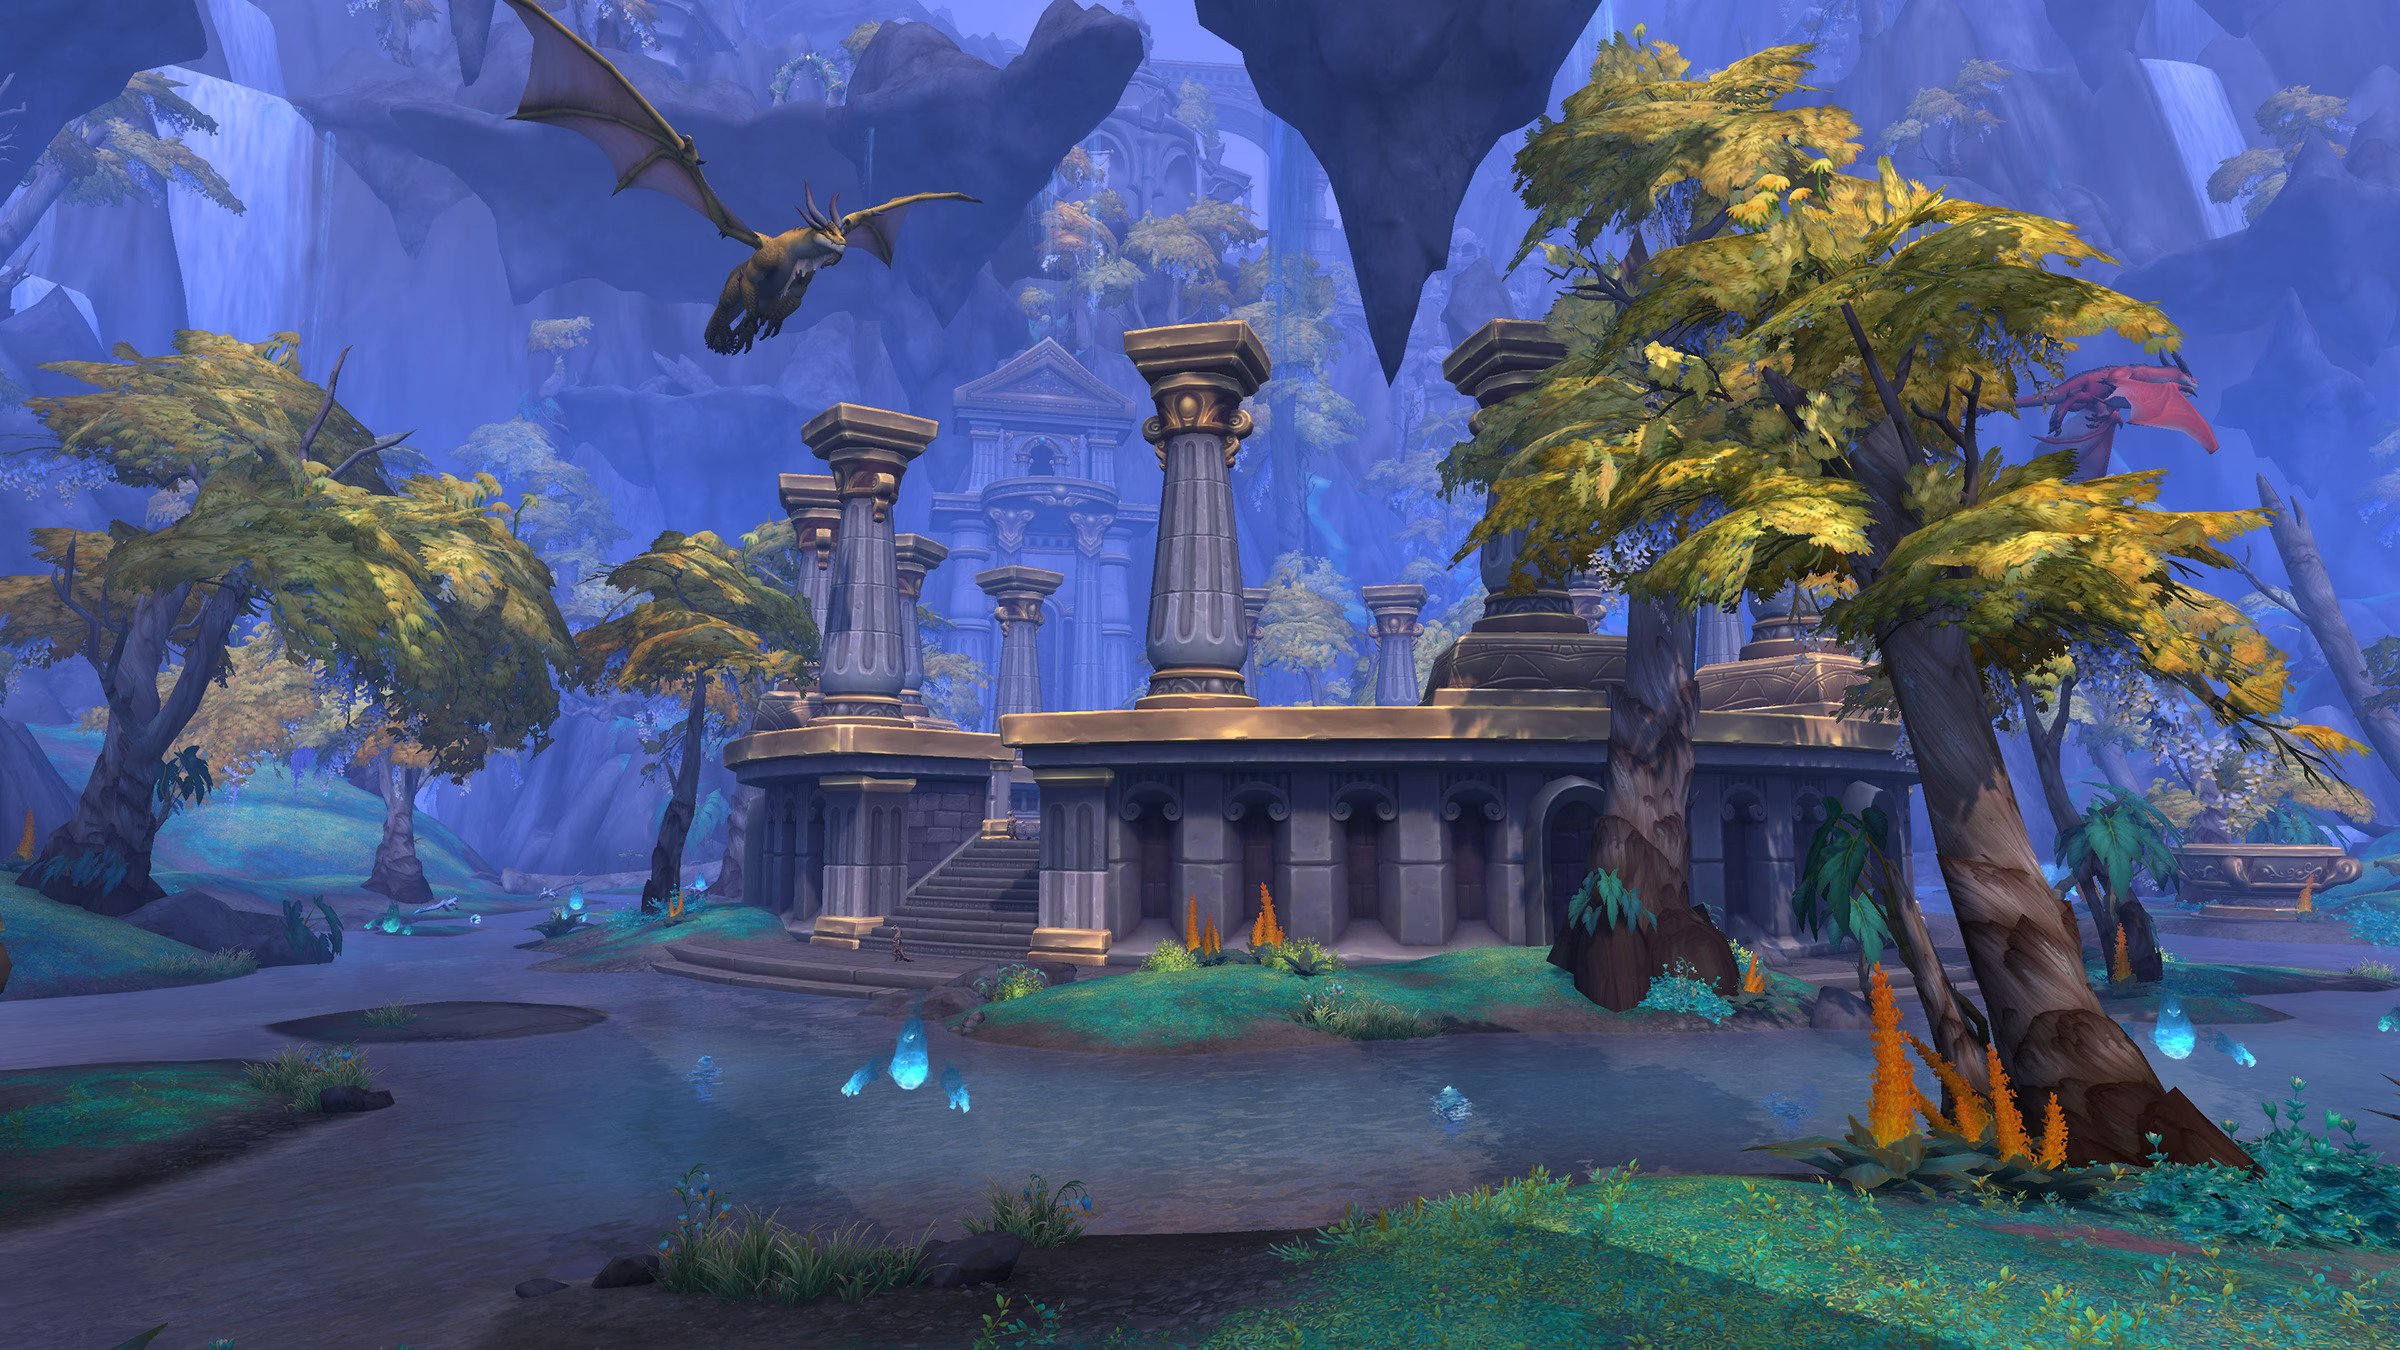 나무와 기둥, 그리고 World of Warcraft의 하늘에서 엎드린 용이 쏟아져 나옵니다. 이미지는 파란색 빛으로 채워져 있습니다